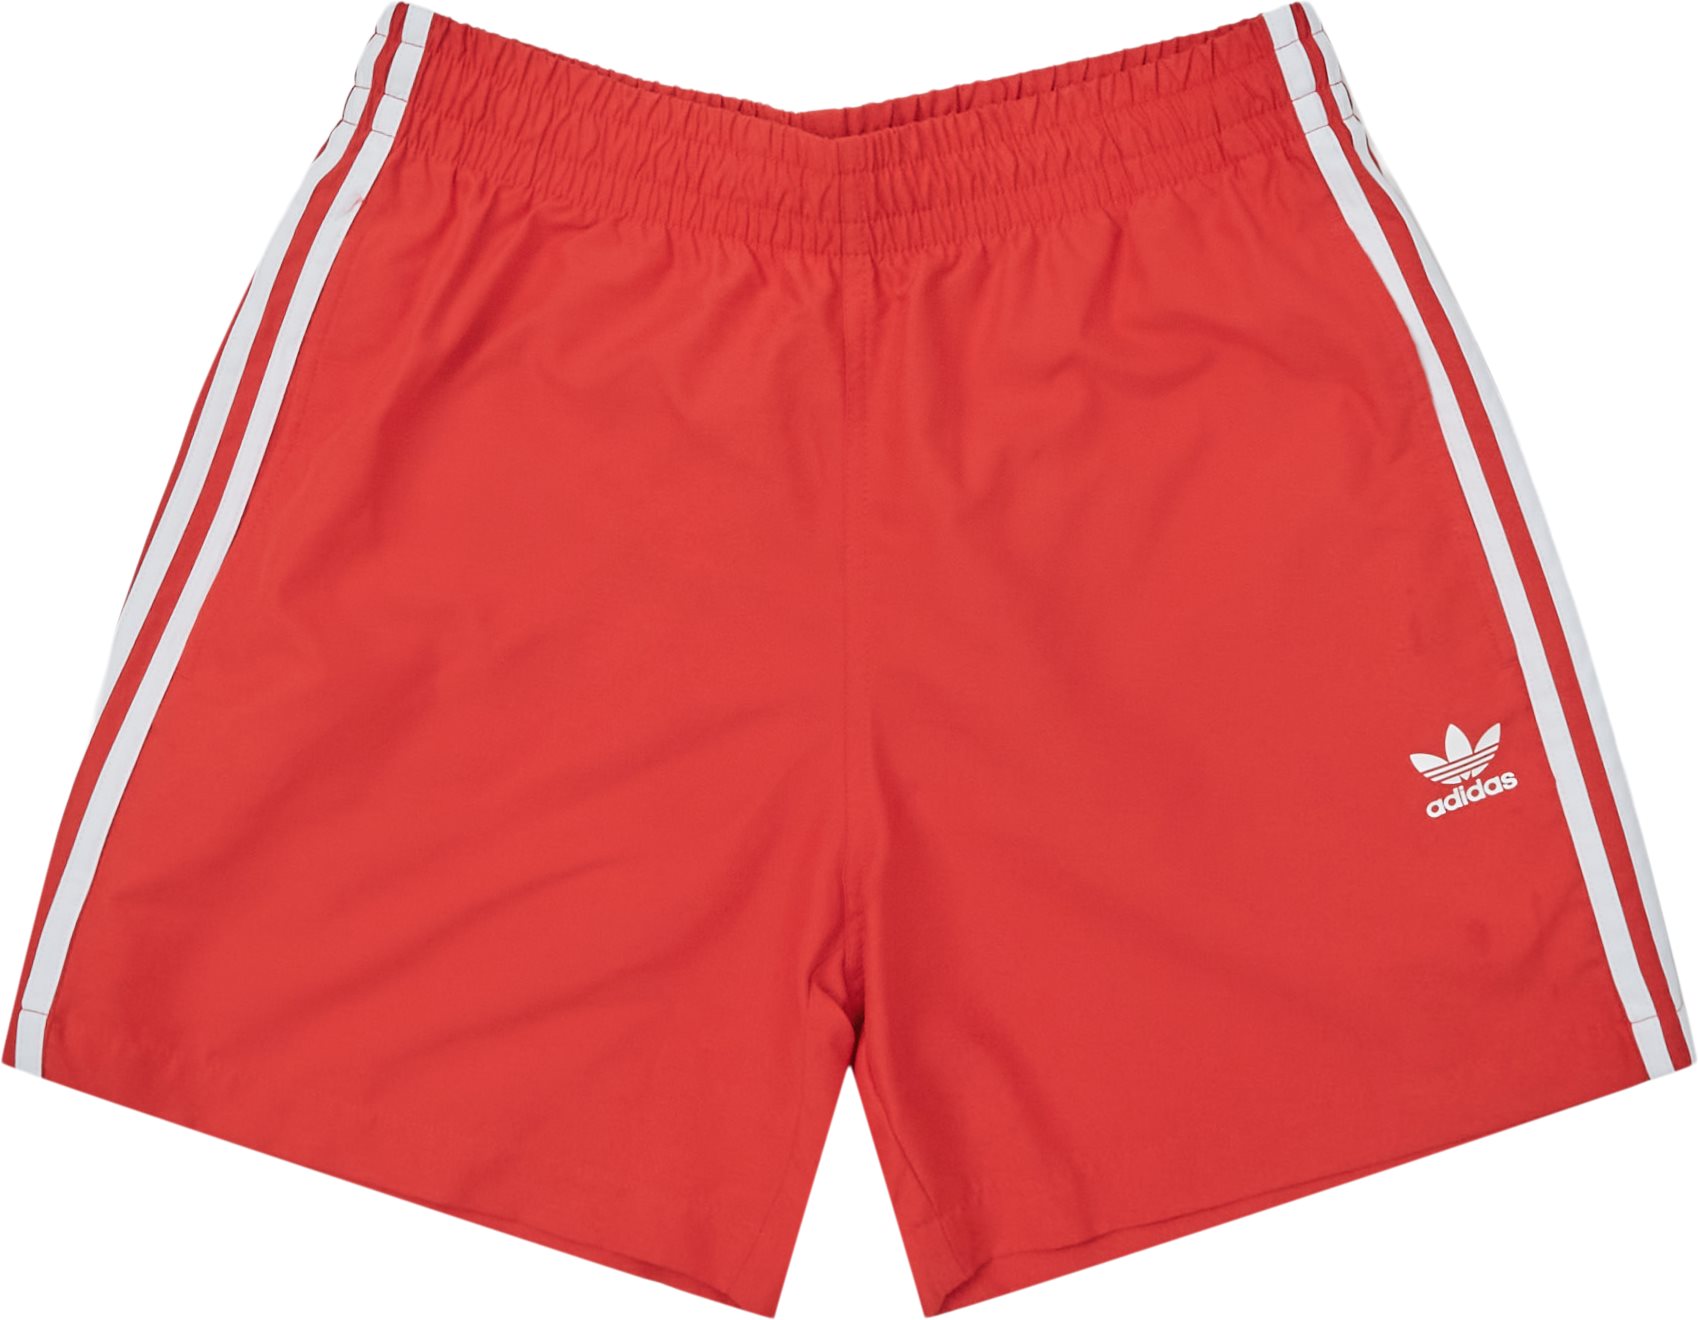 Adidas Originals Shorts 3-STRIPES SWIM SS22 Red